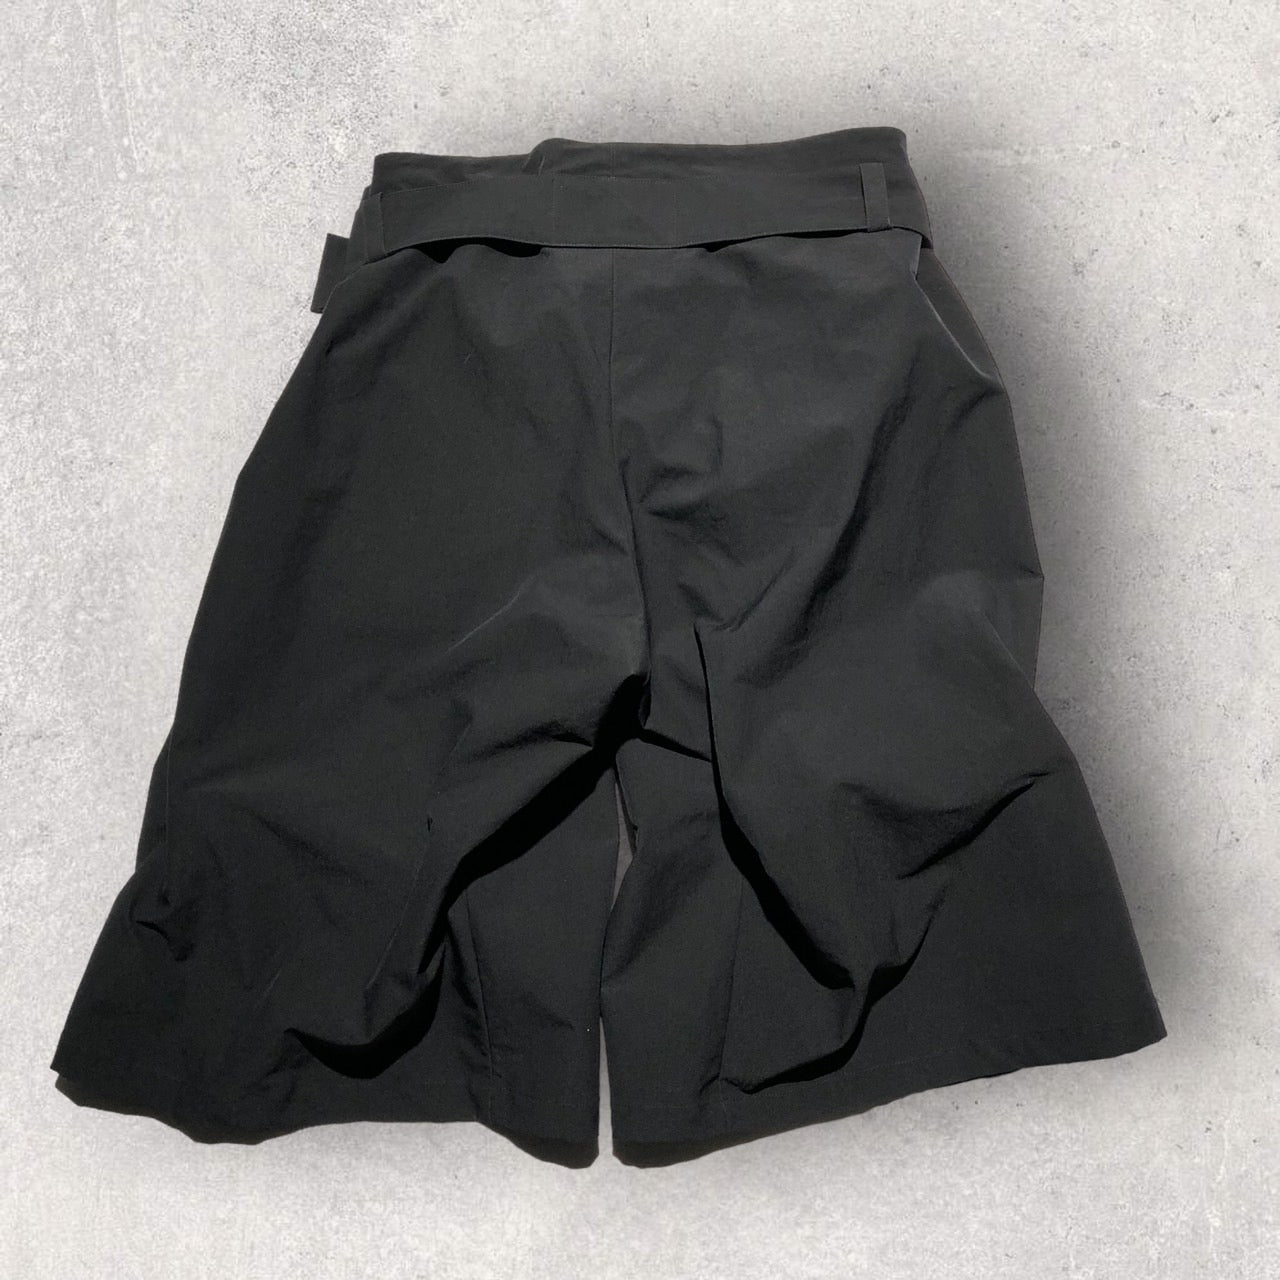 LIMI feu(リミフゥ) ダブルベルトギャザースカートパンツ LE-P25-900 S ブラック